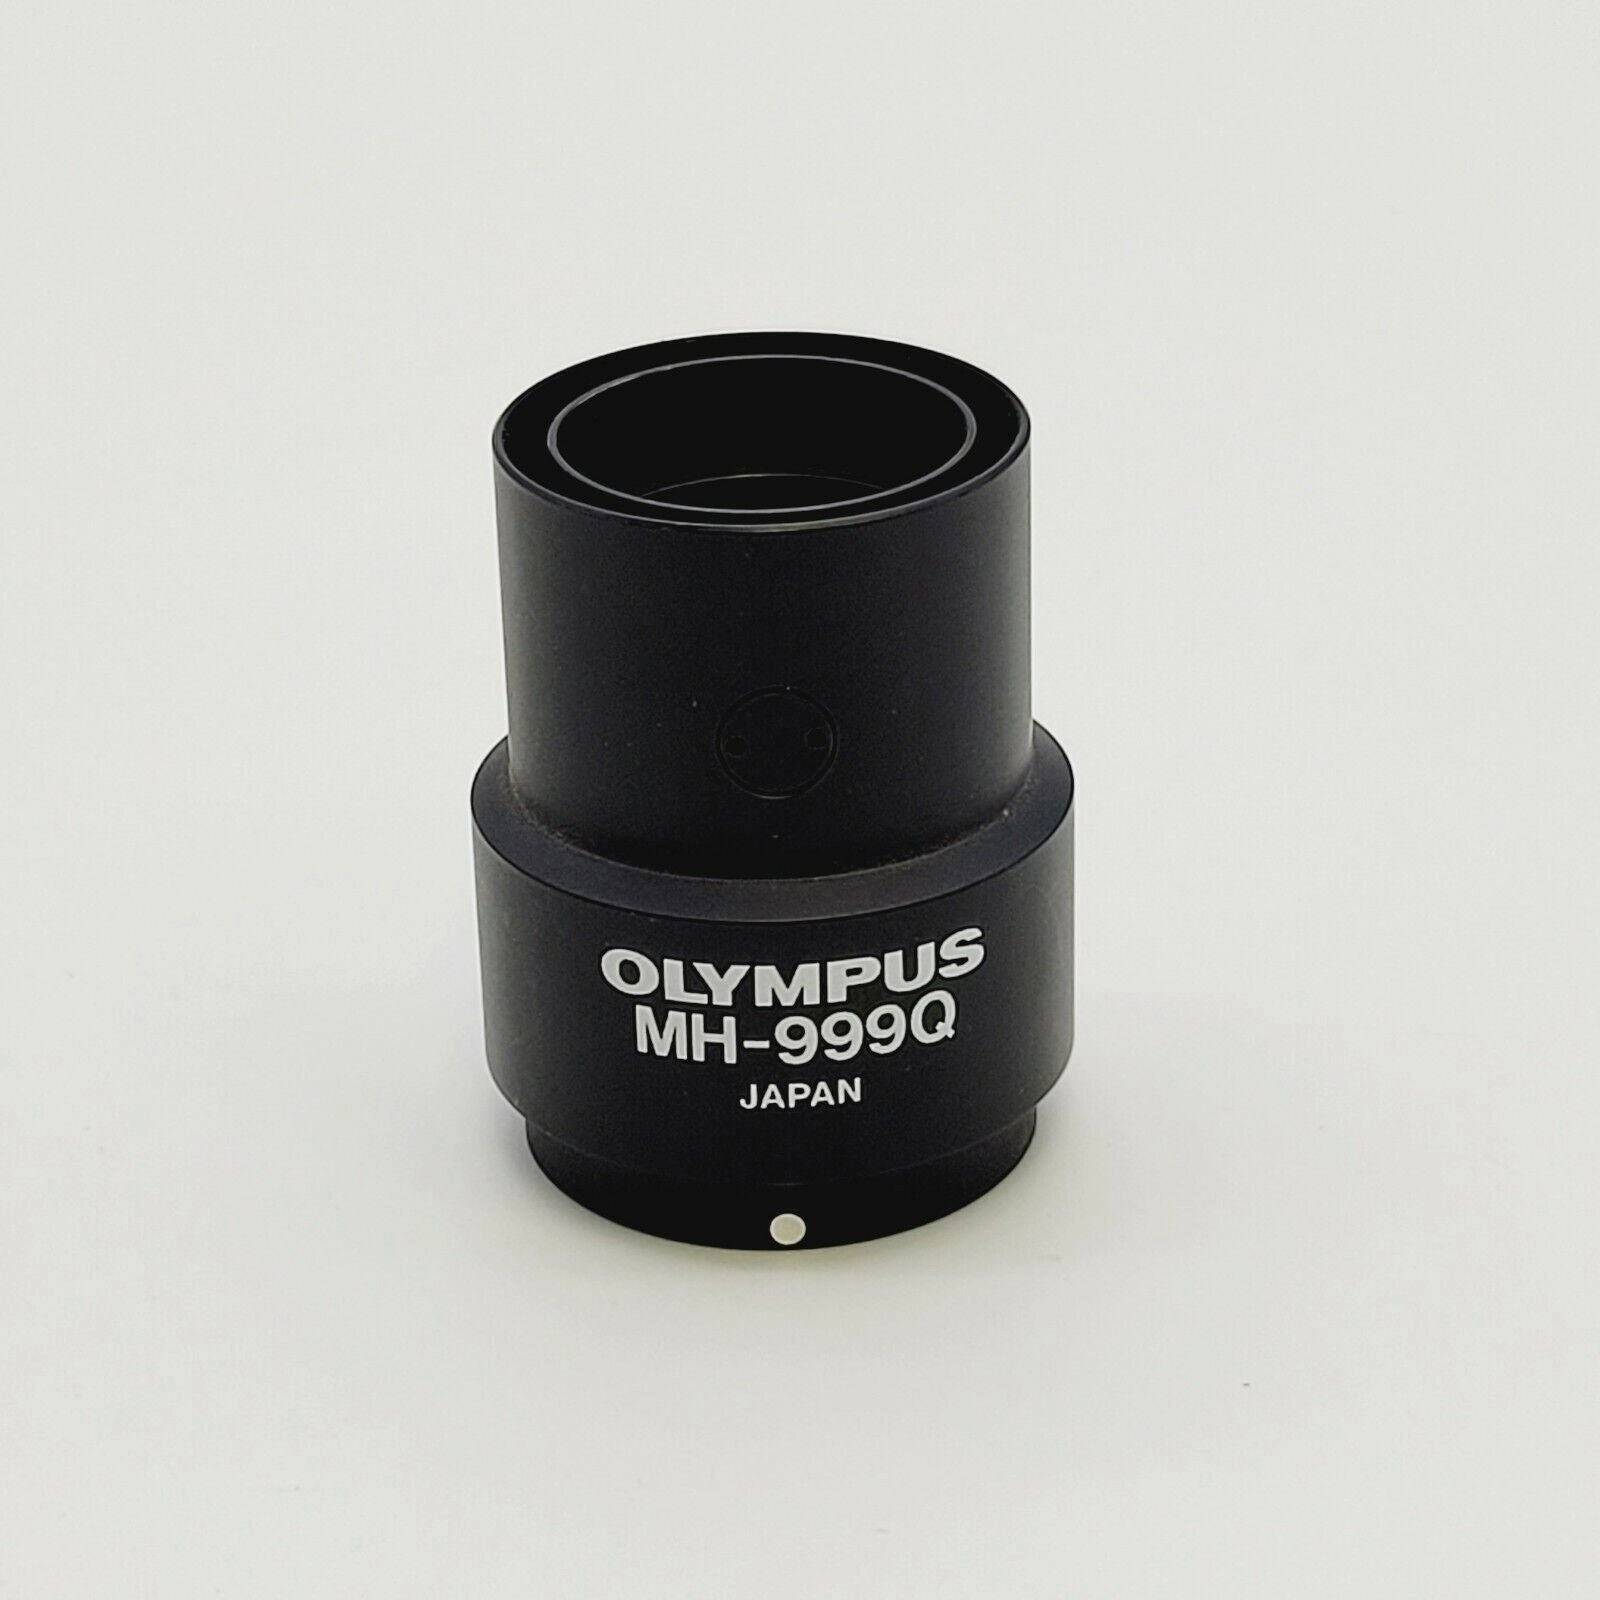 Olympus Lens MH-999Q